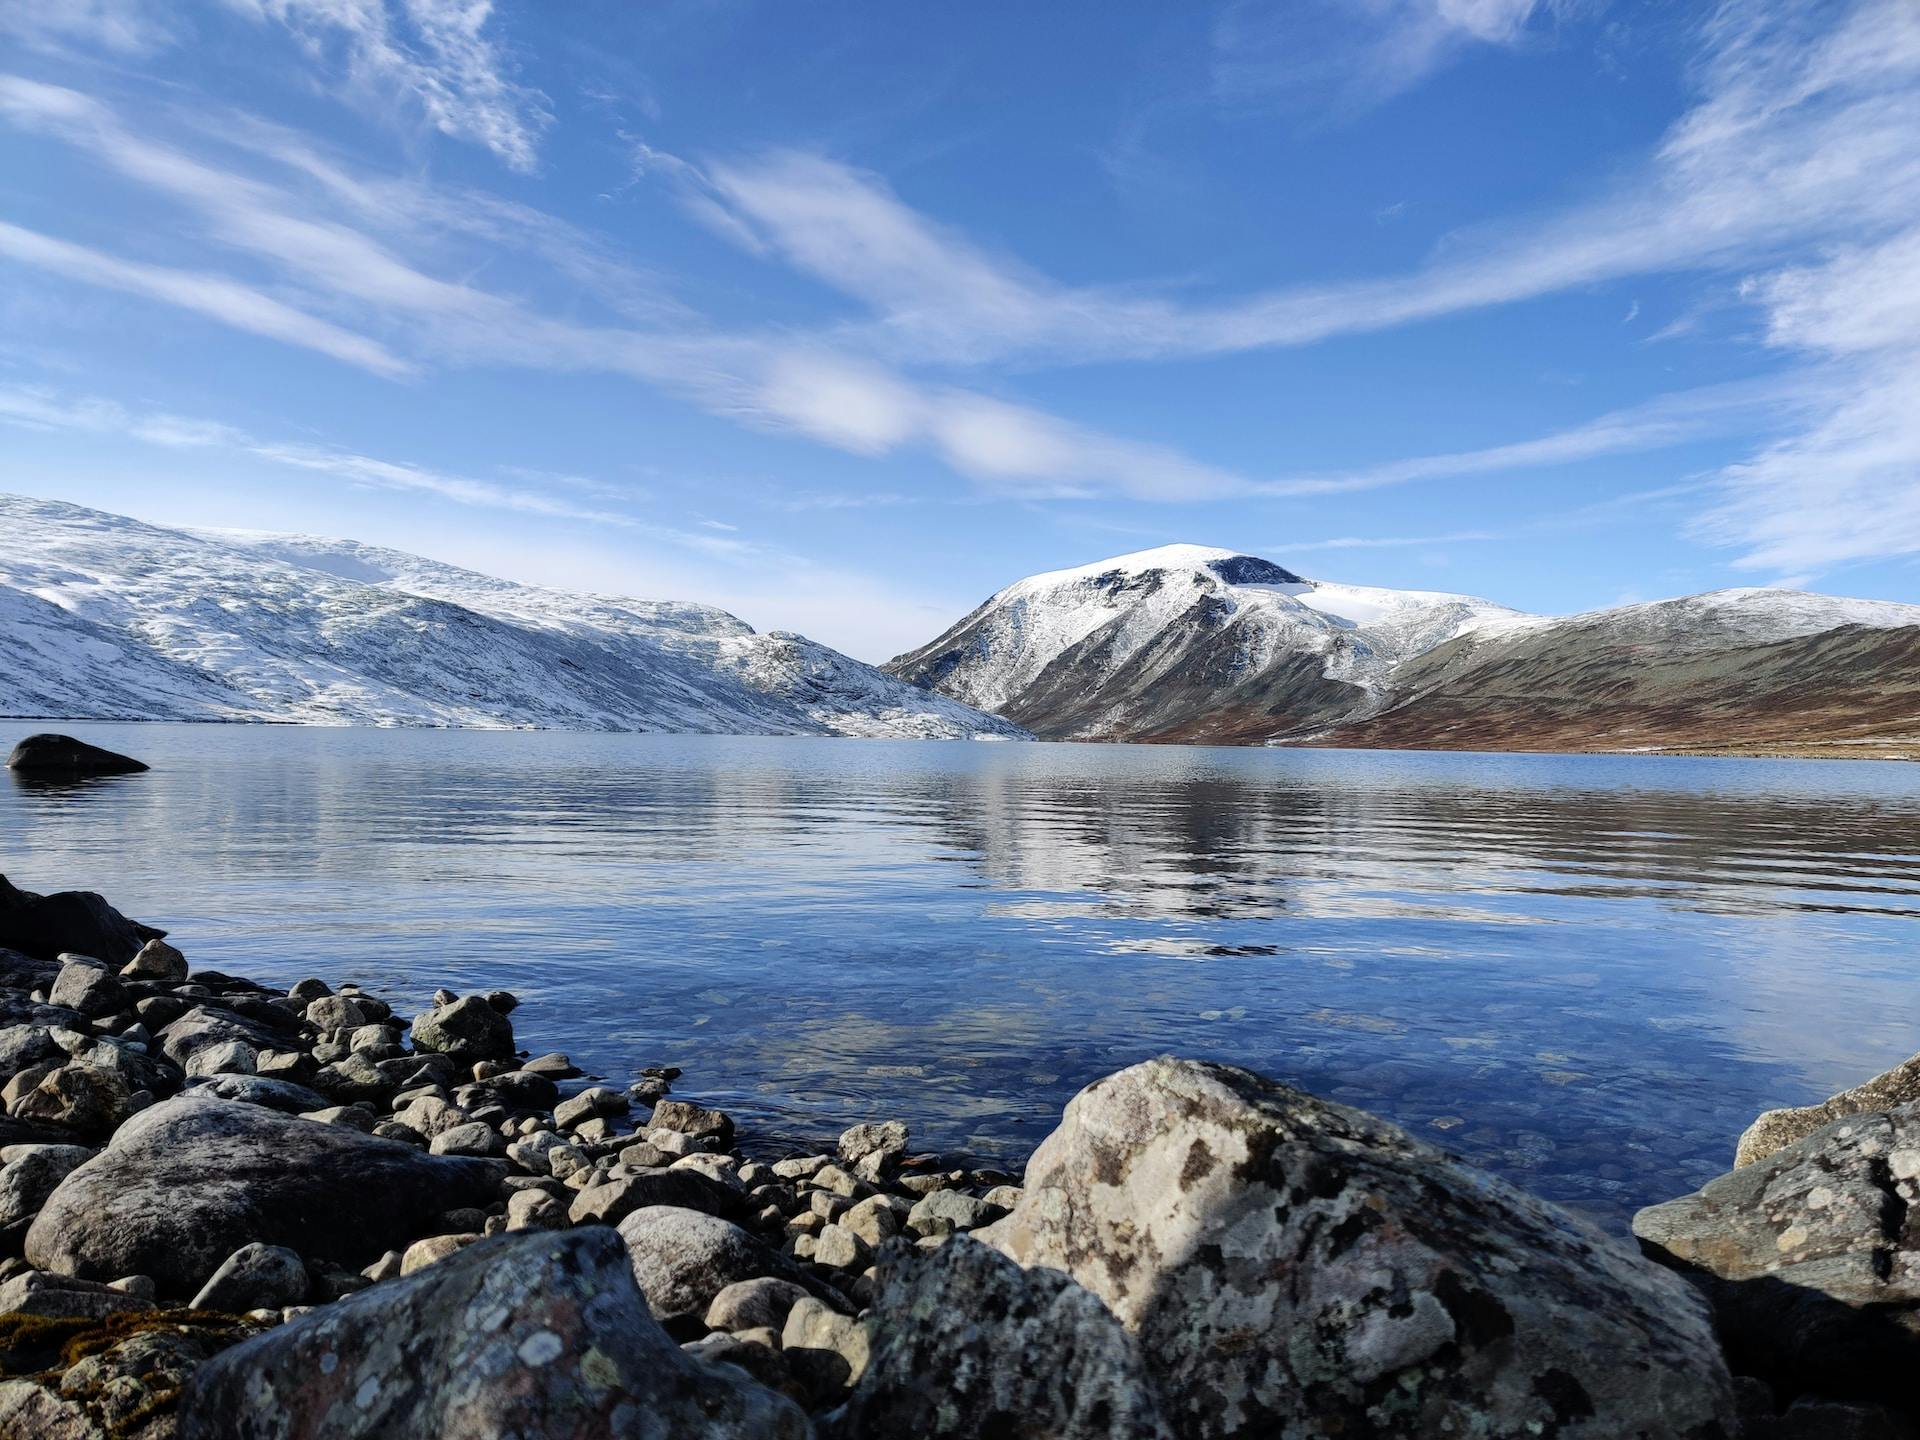 Voyage en camping-car Norvège - Hautes montagnes et fjords profonds